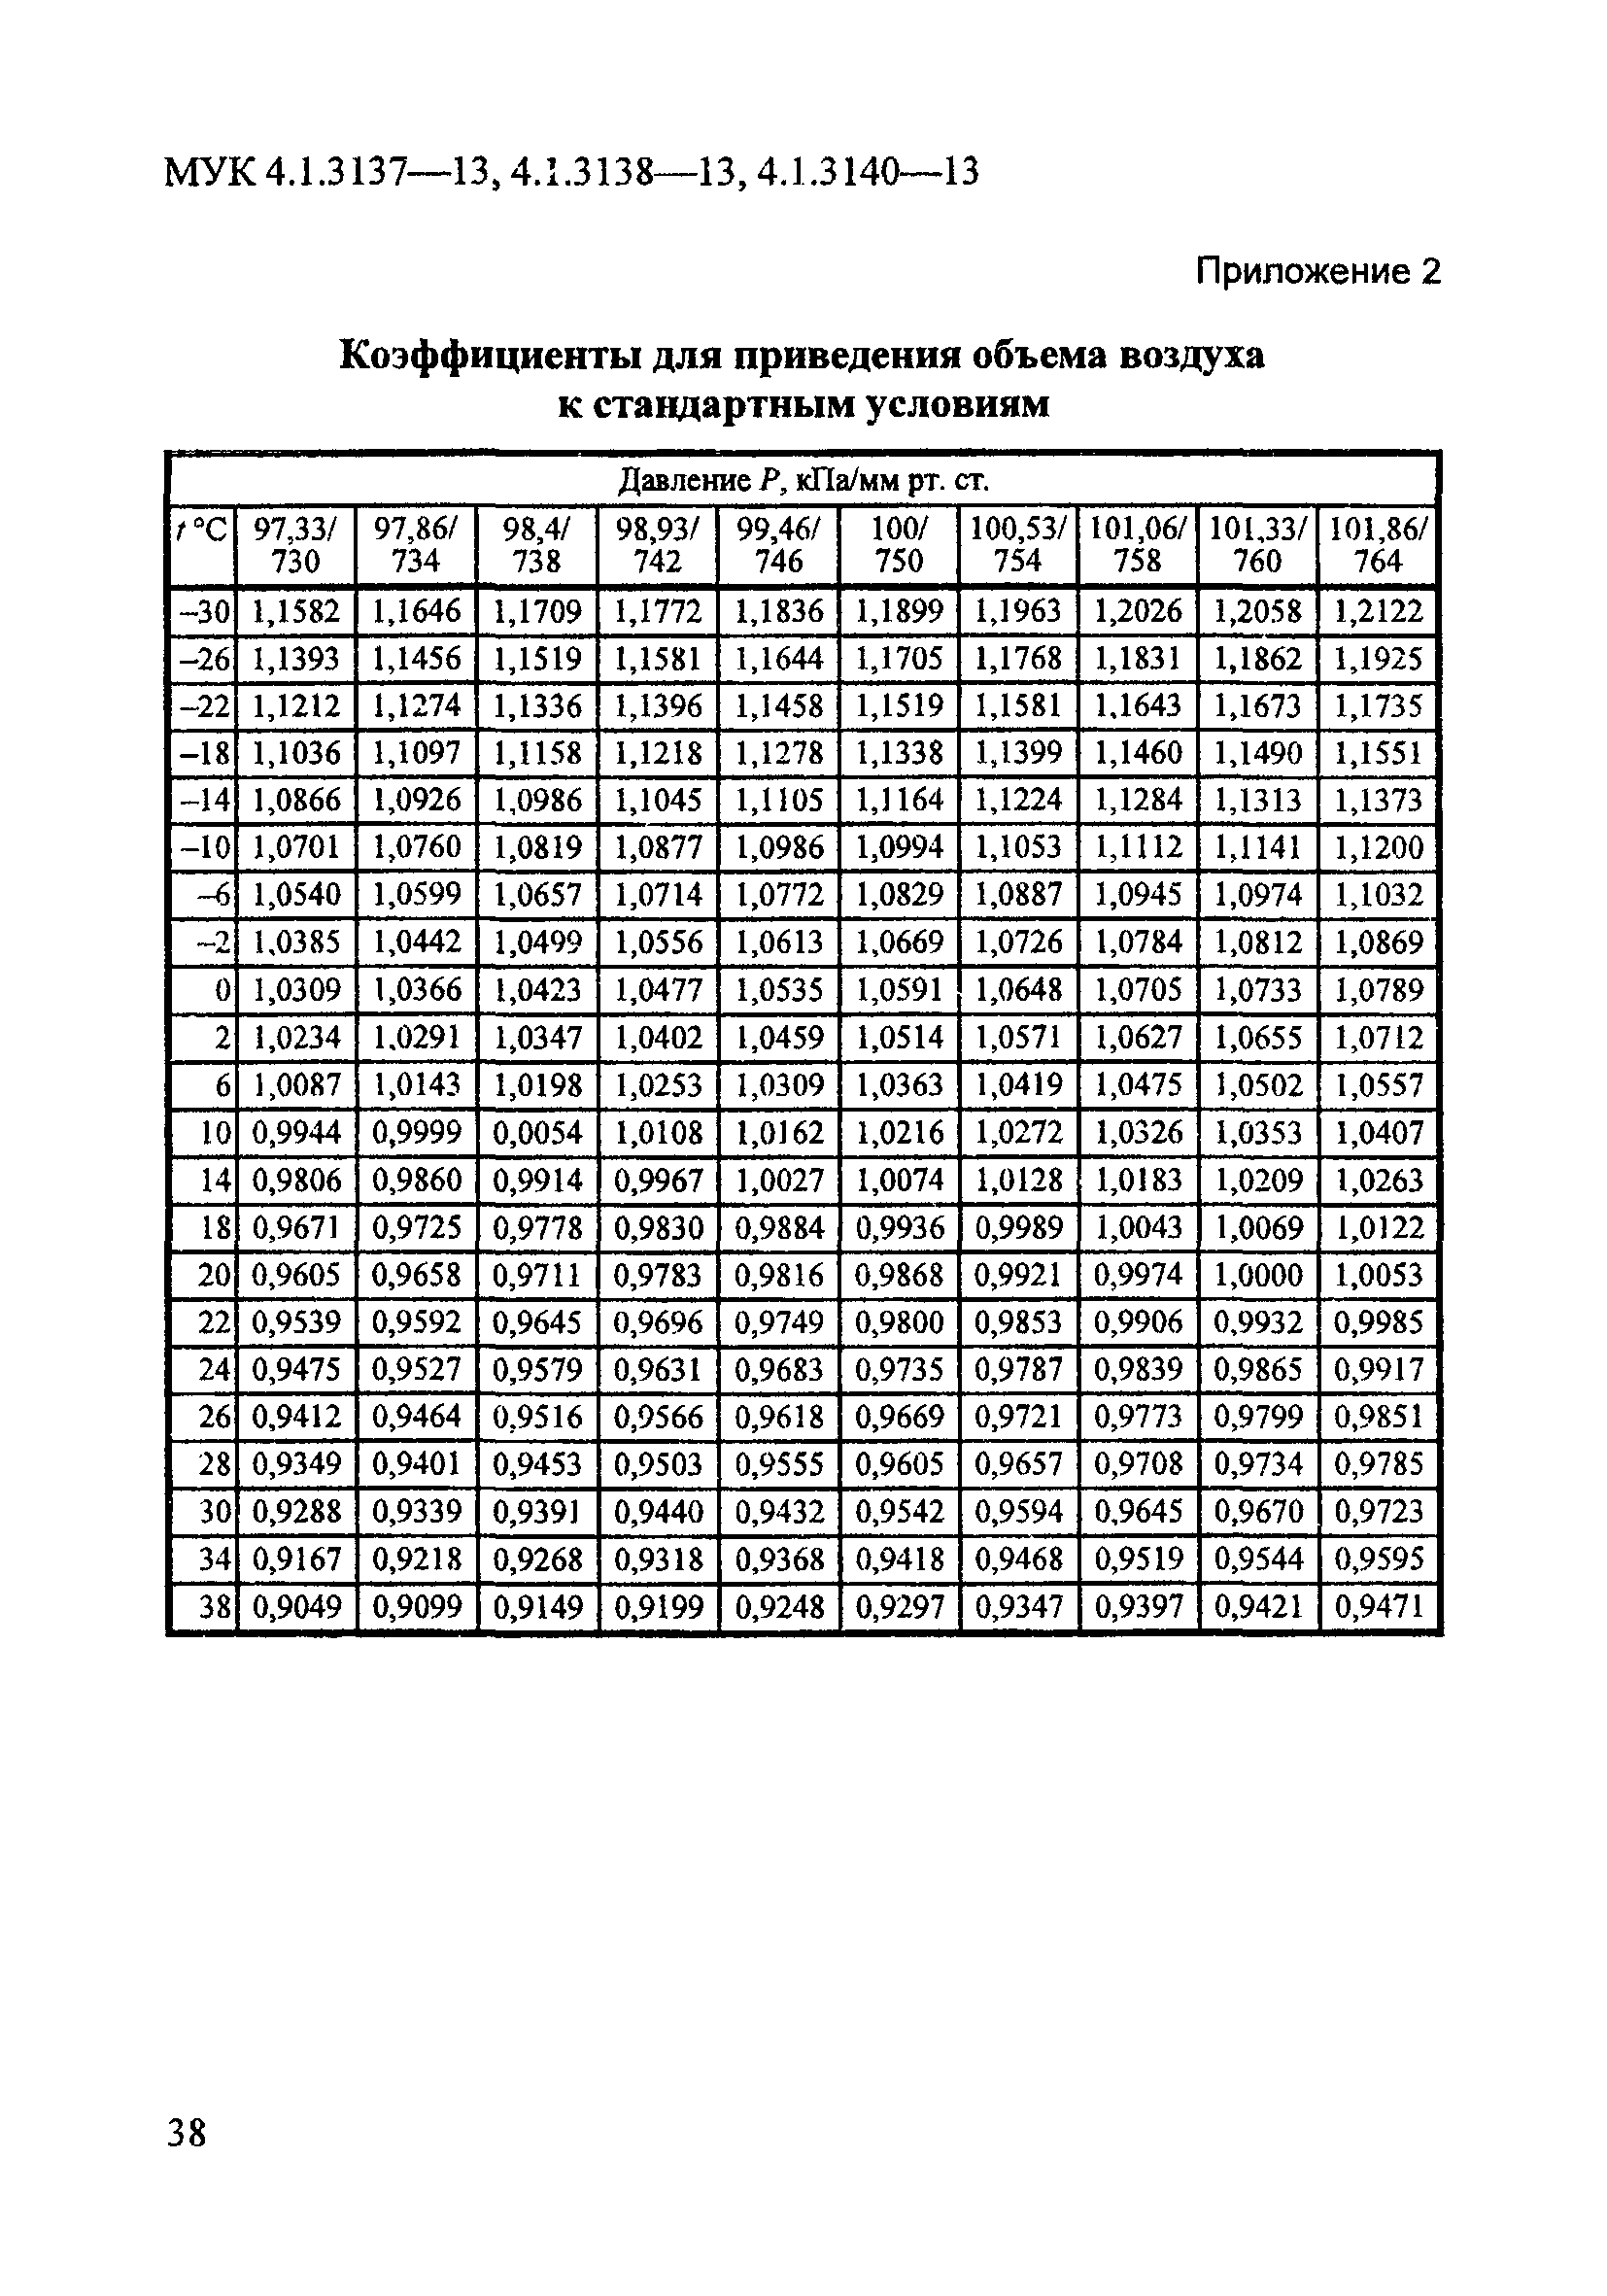 МУК 4.1.3140-13